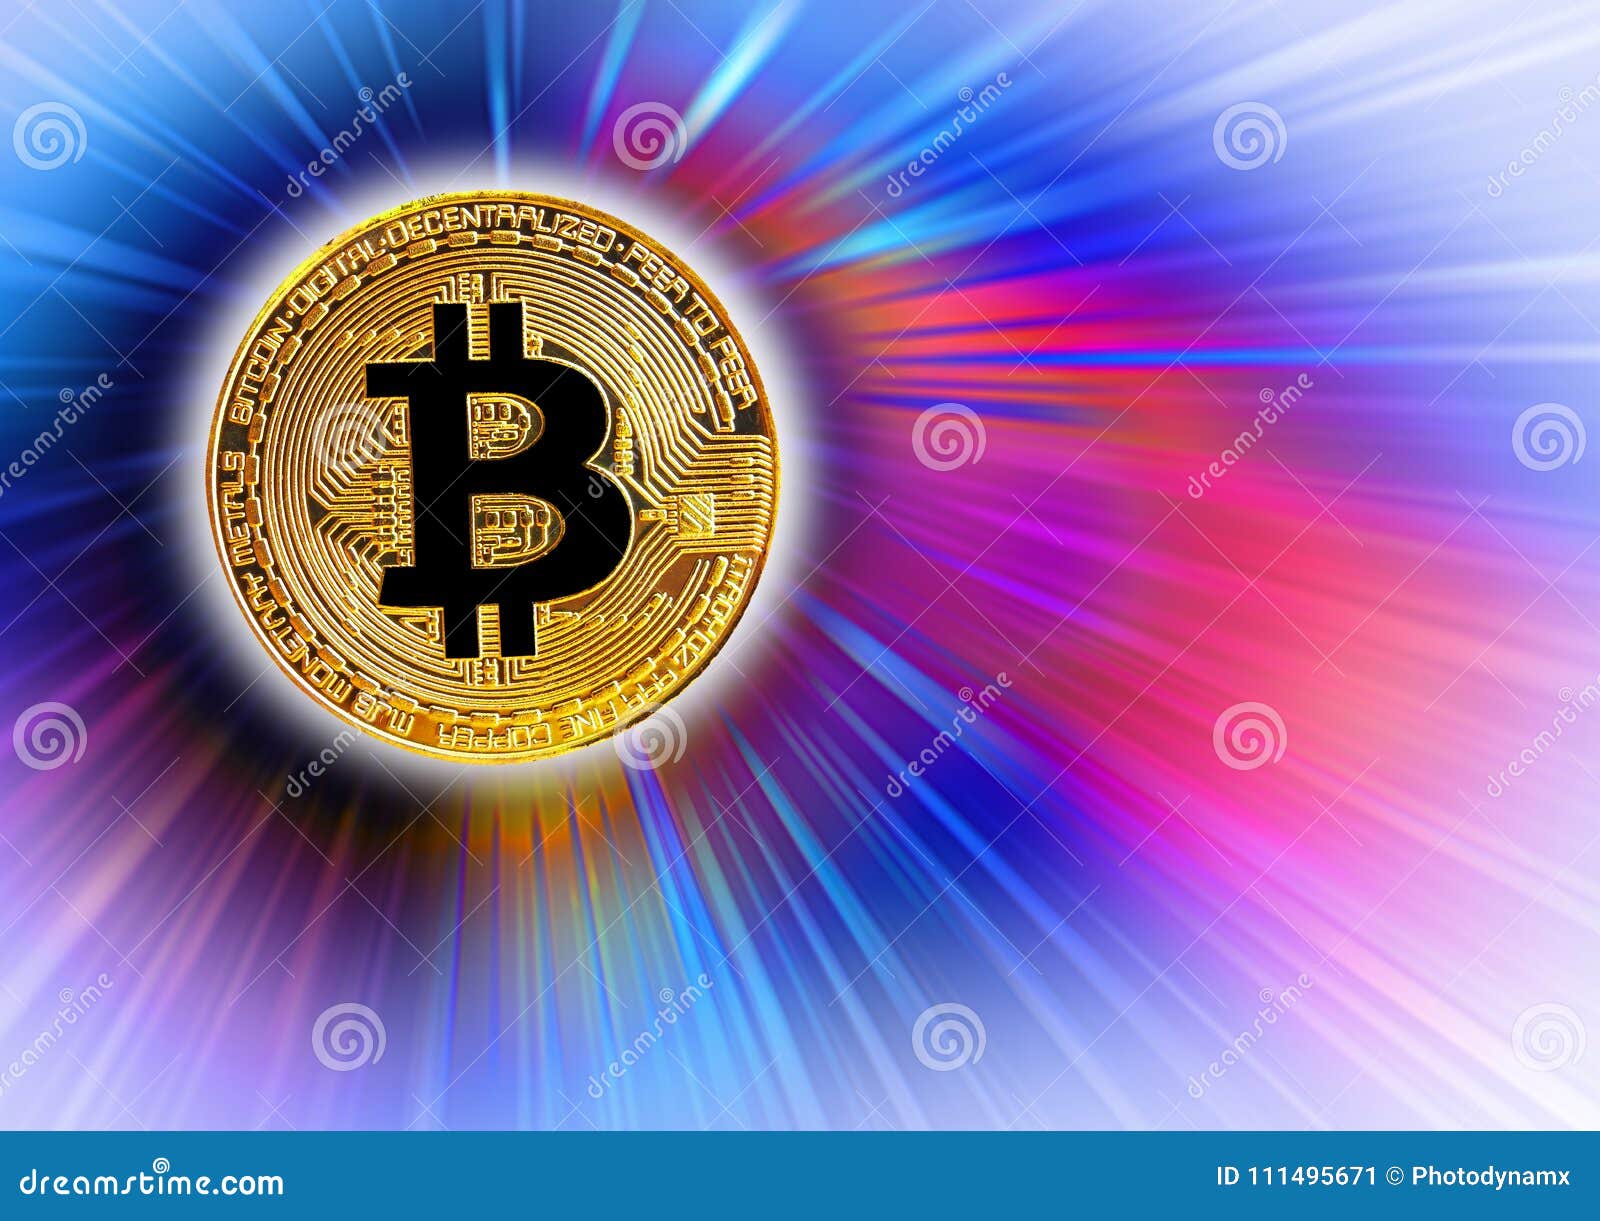 - Cme bitcoin futures volume